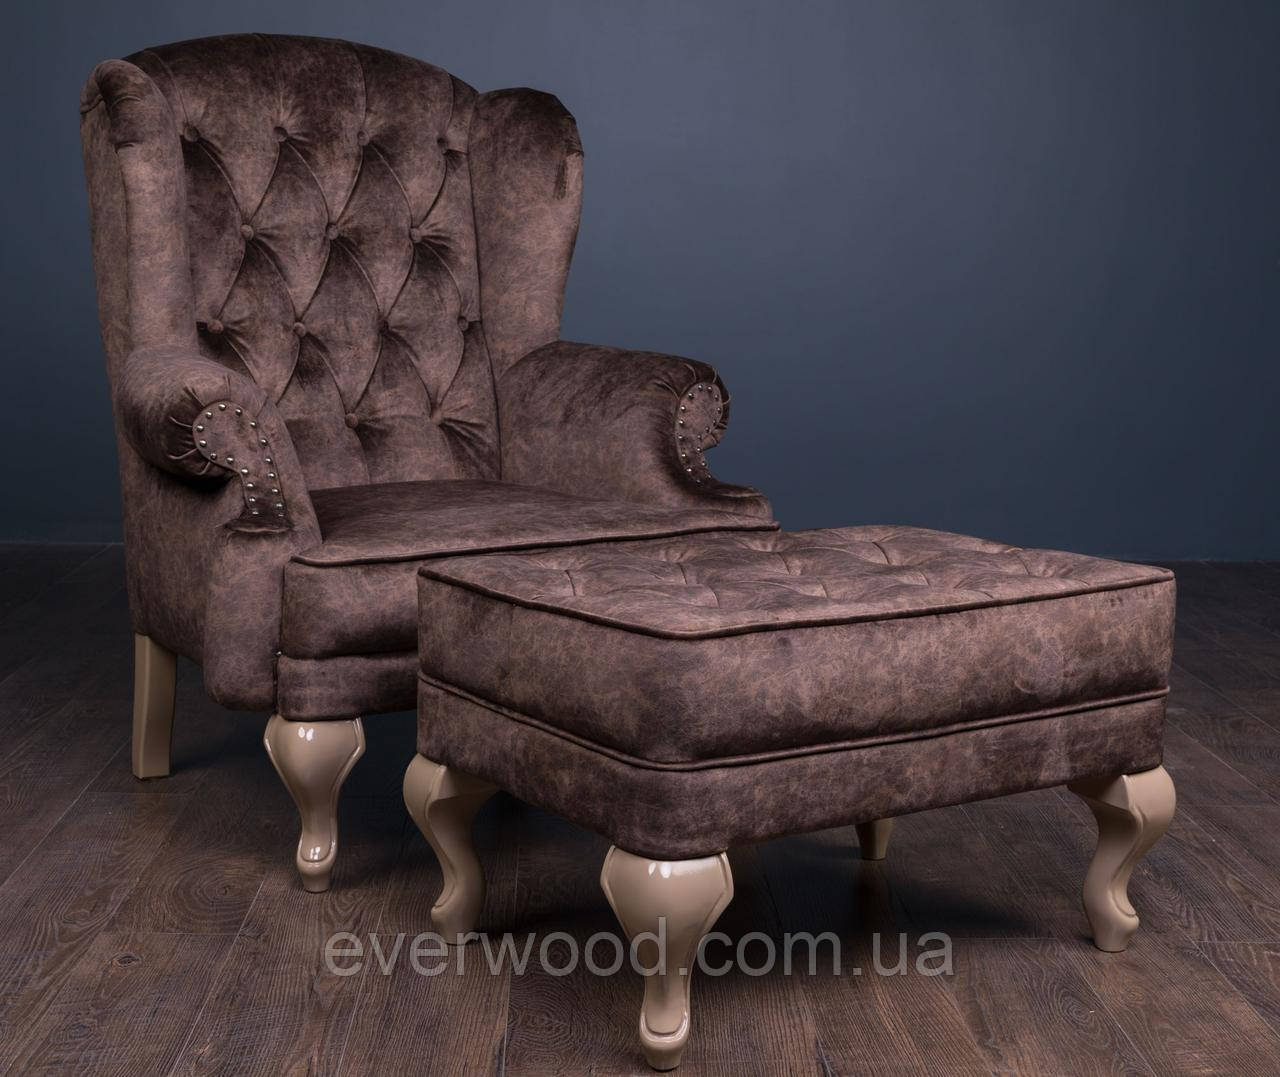 фото Классическое мягкое кресло Вальтер и пуф, удобное кресло с каркасом из дерева